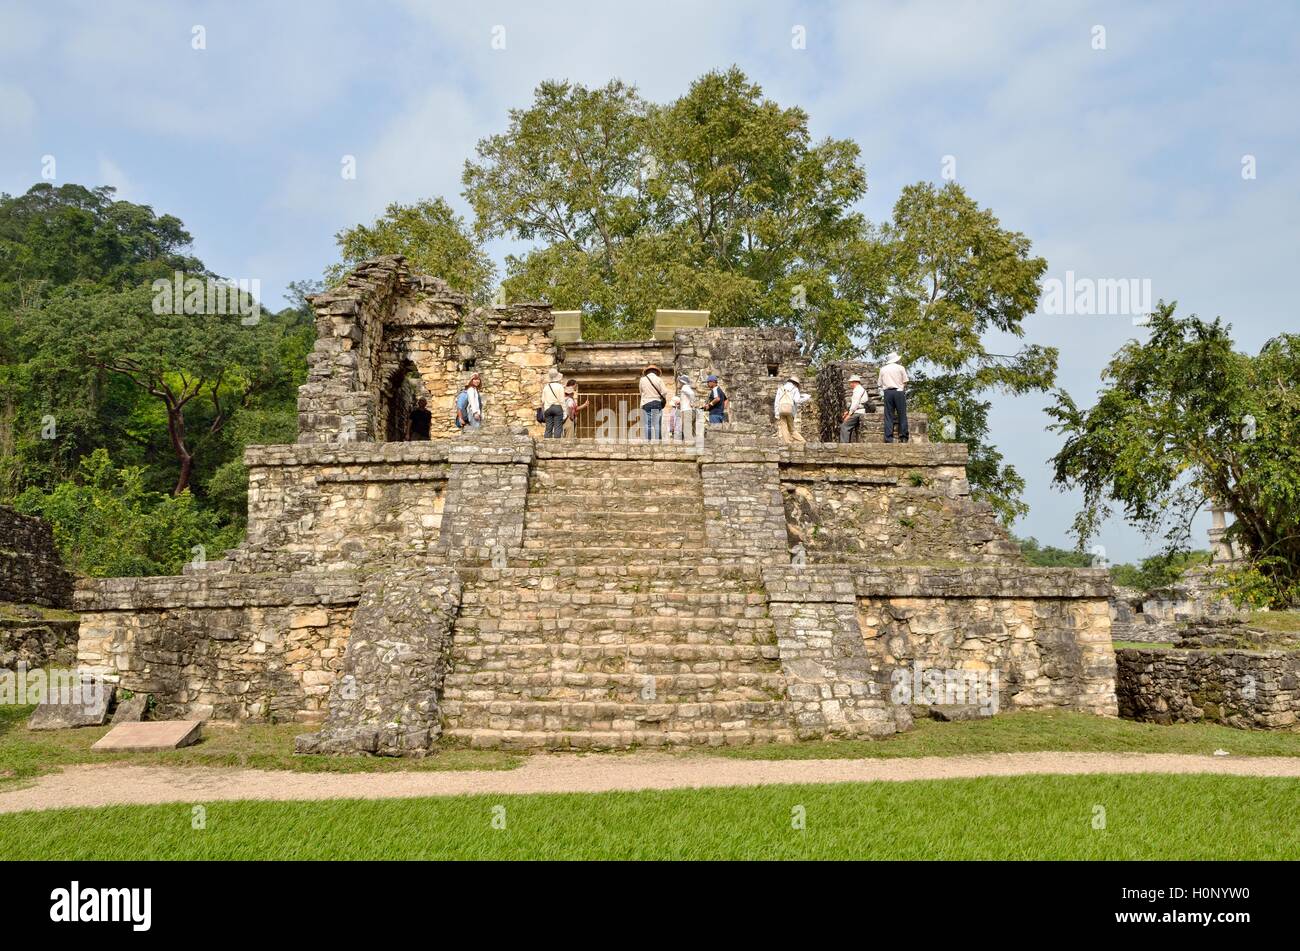 Grupo de turistas en el Templo XIV, las ruinas mayas de Palenque, Chiapas, México. Foto de stock